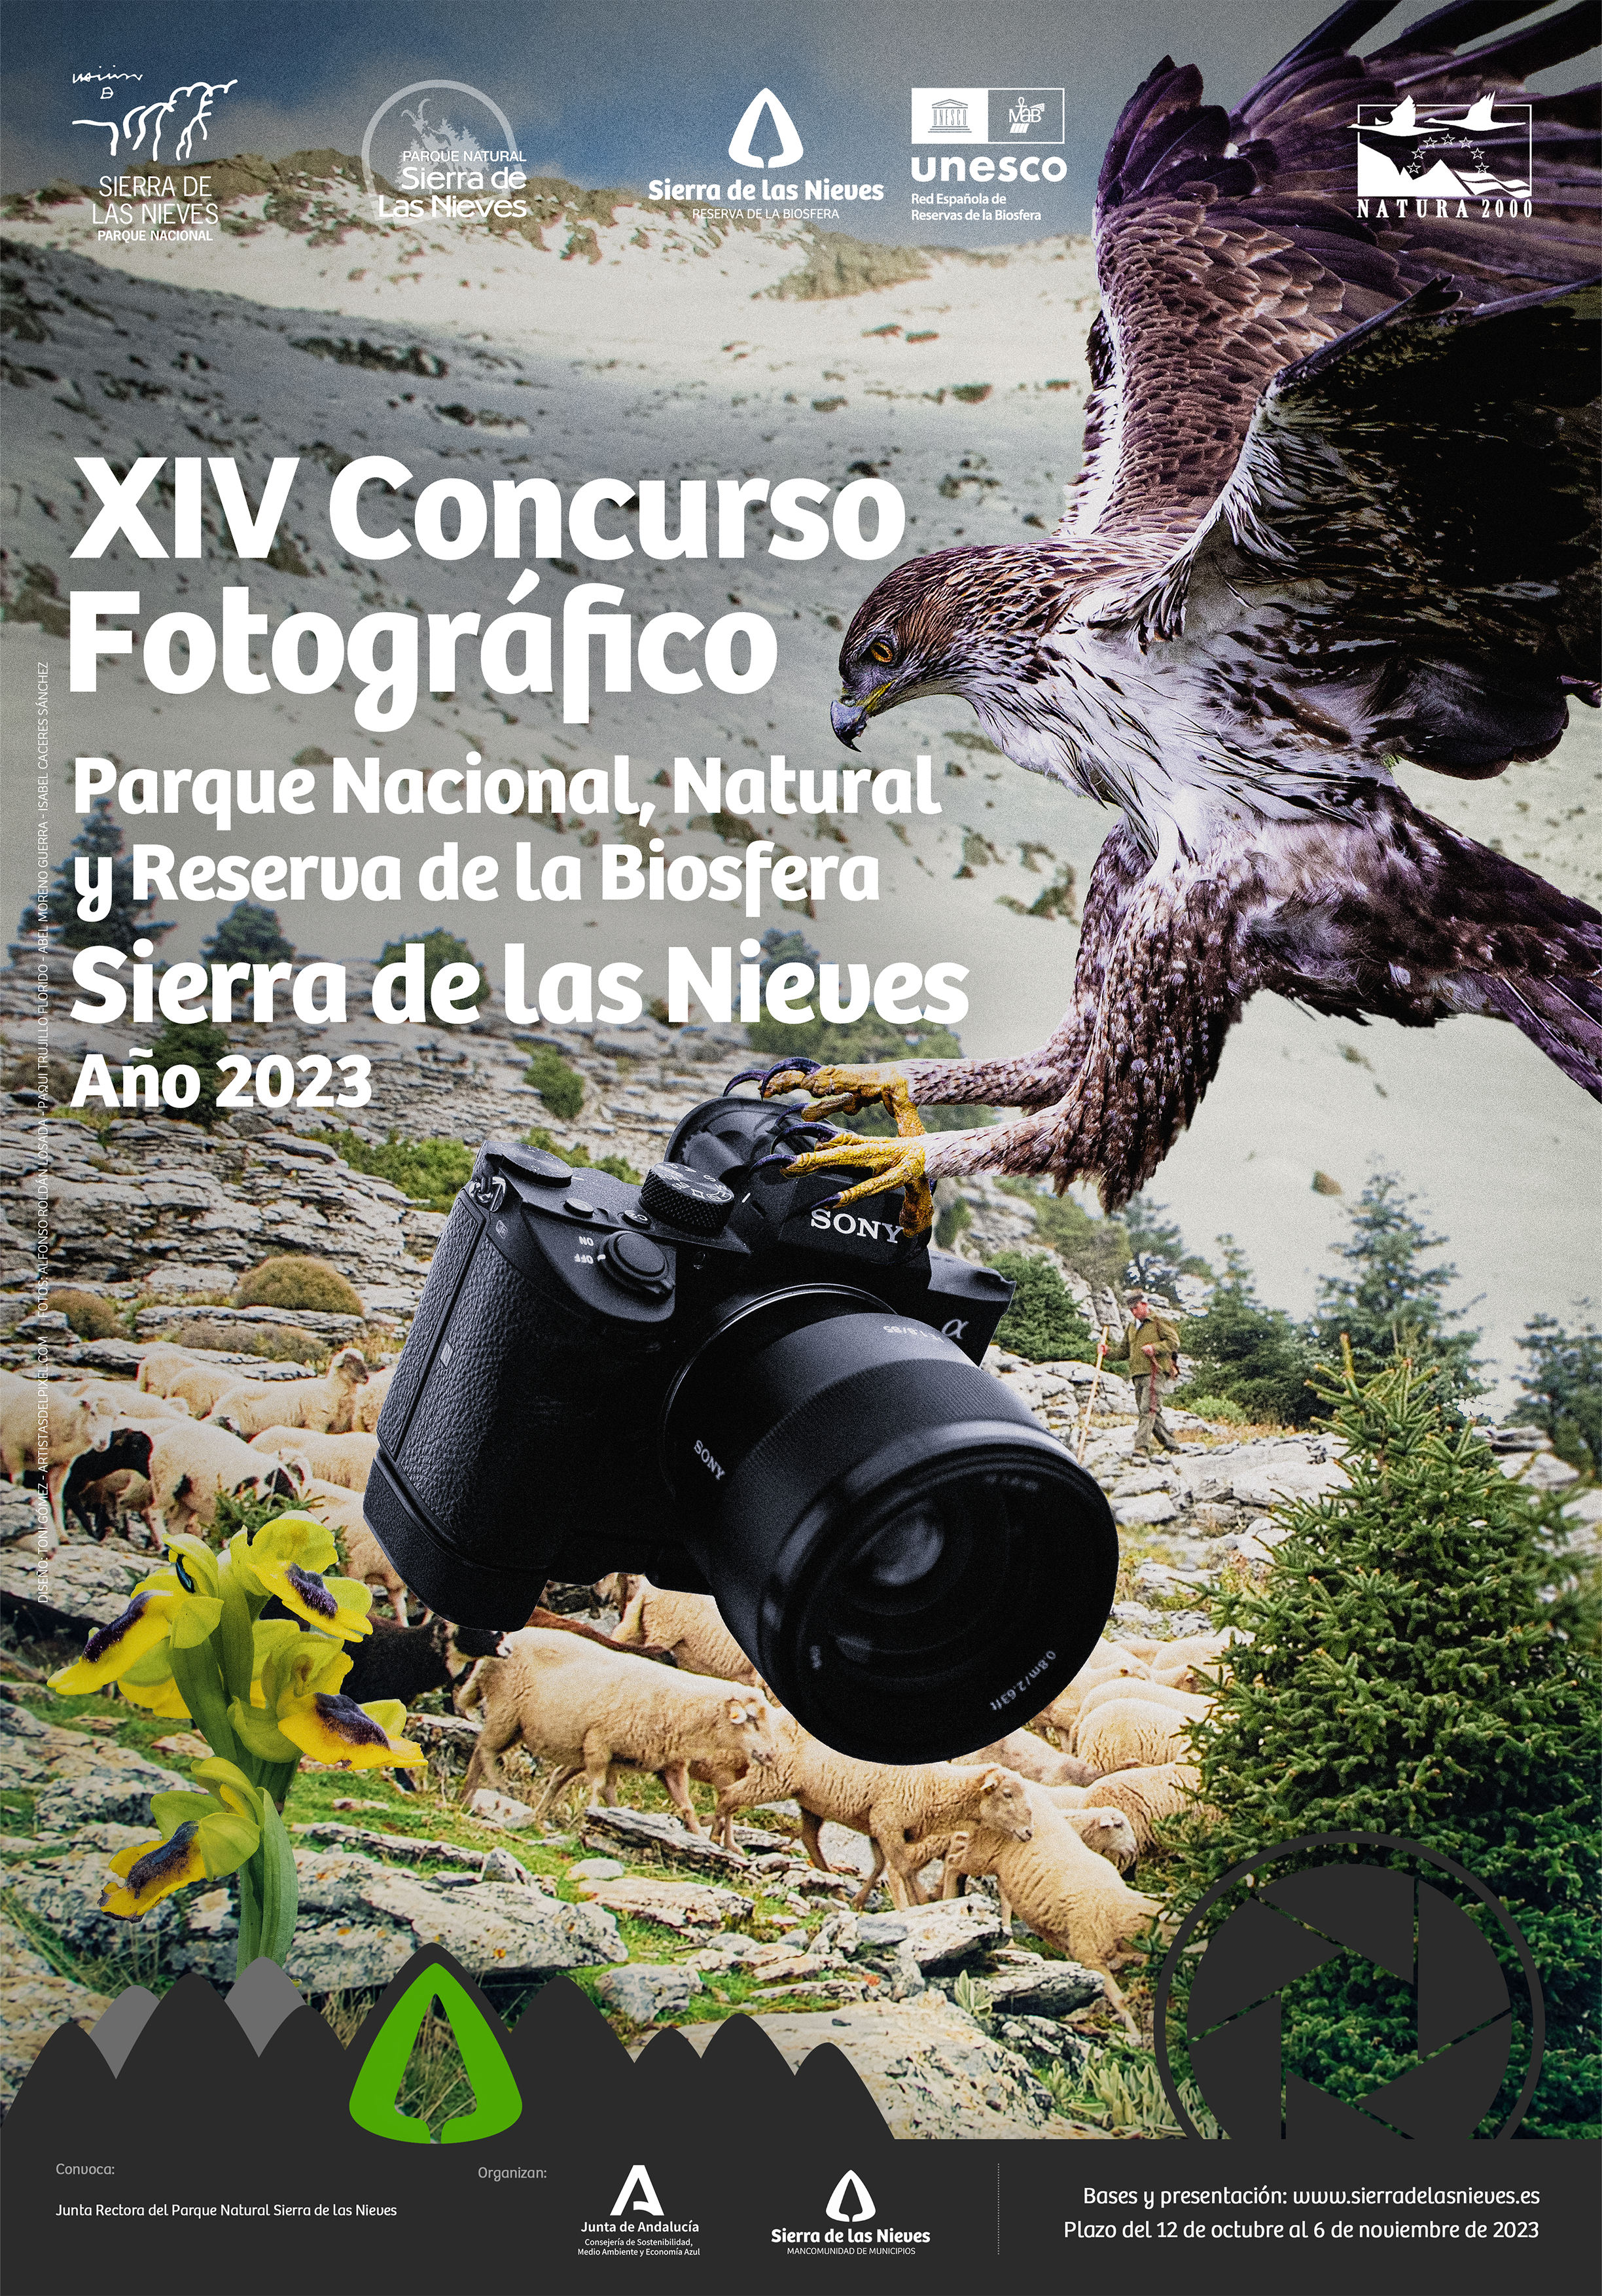 XIV Concurso Fotográfico Parque Nacional, Natural y Reserva de la Biosfera Sierra de las Nieves. Año 2023